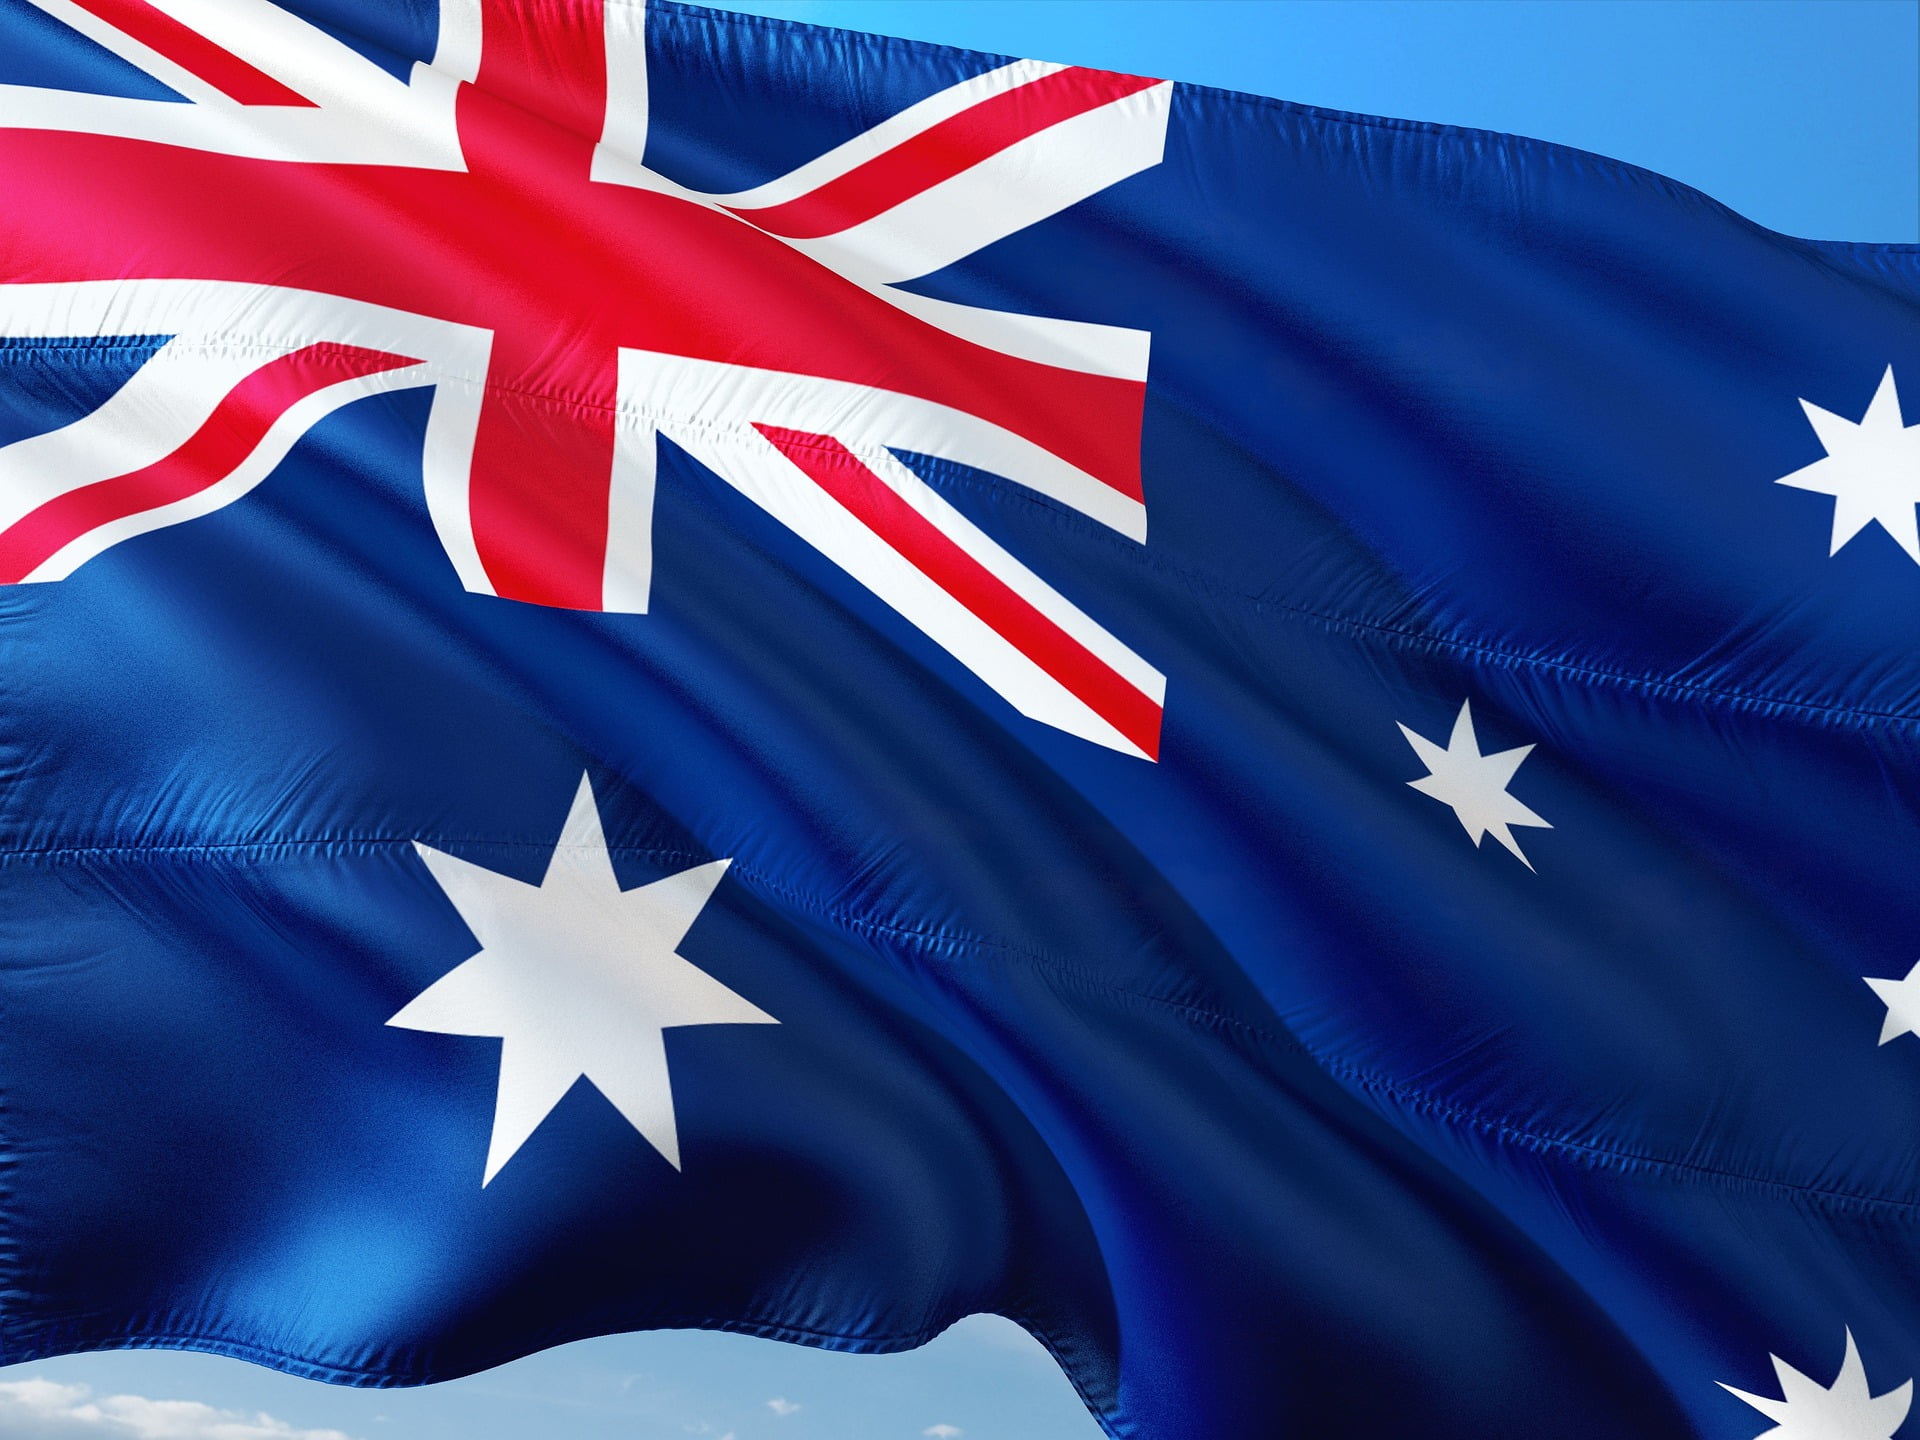 Australia Tightens Visa Regulations